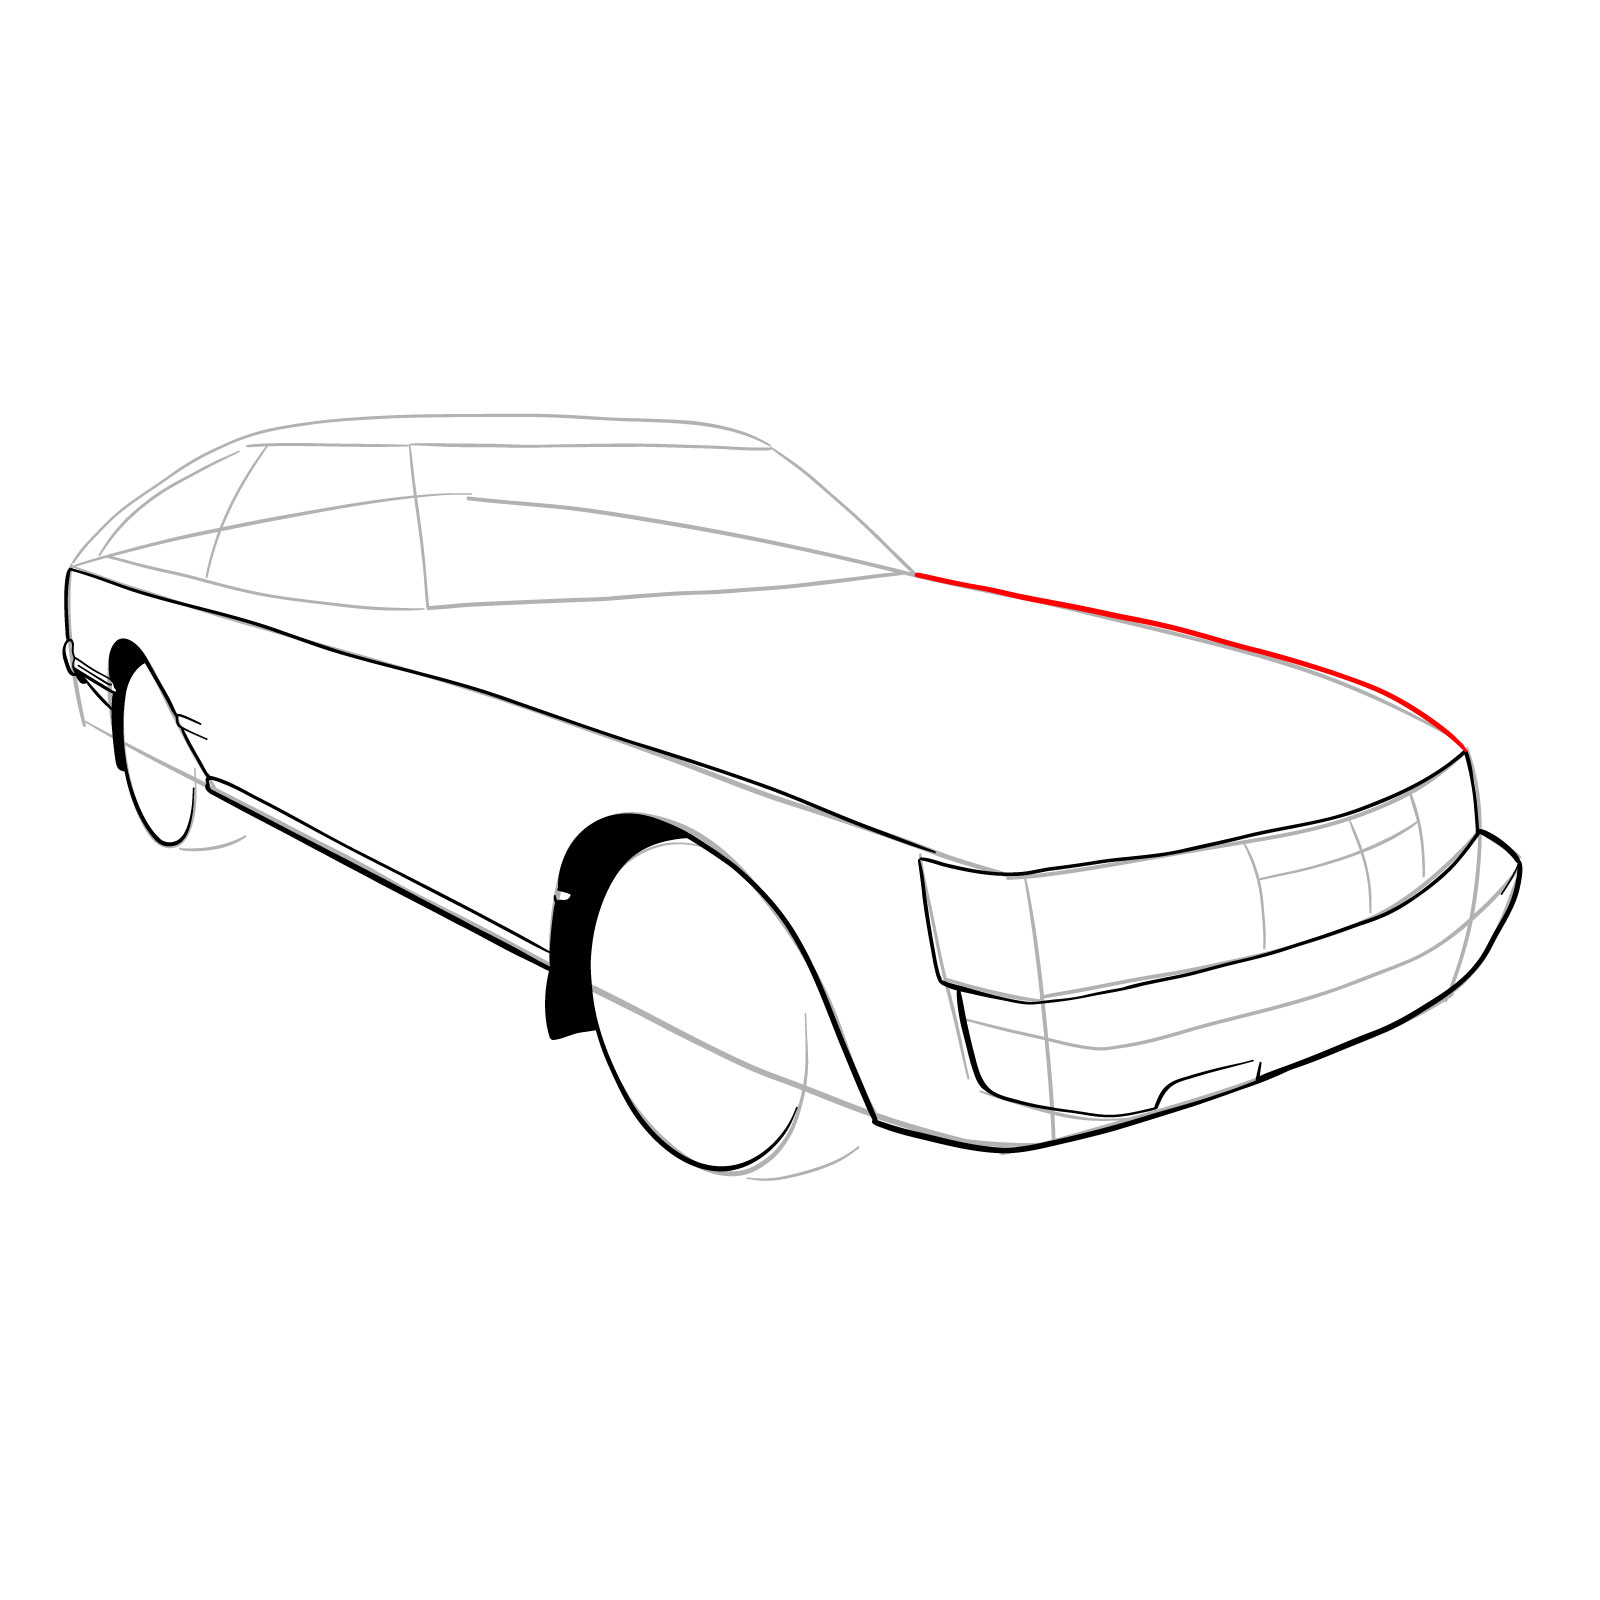 How to draw a 1979 Toyota Celica Supra Mk I Coupe - step 13